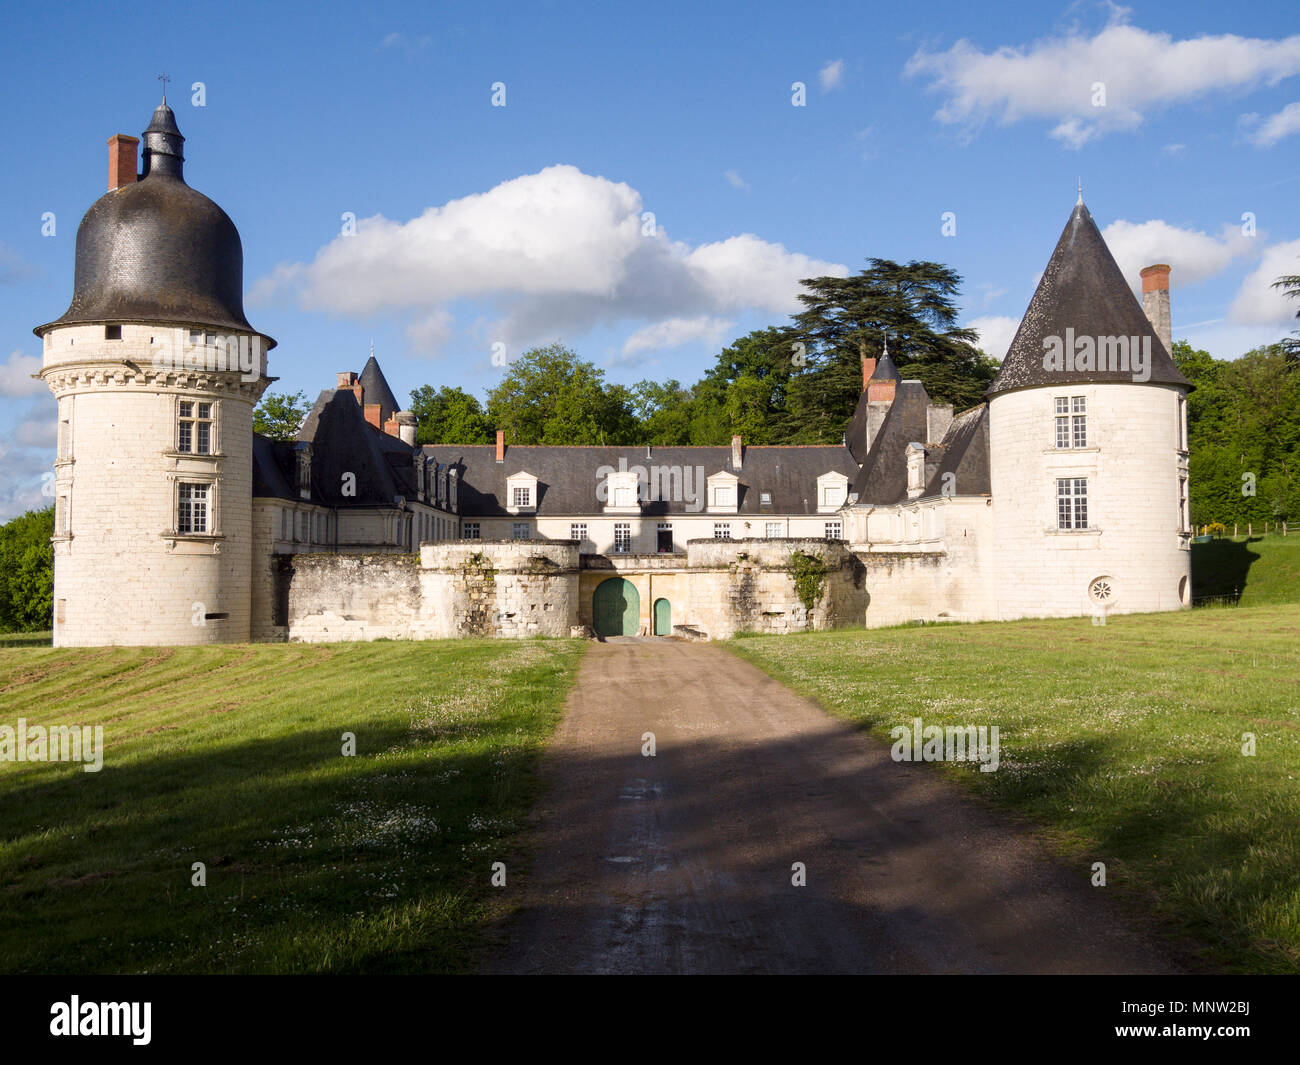 Entrada al Chateau du Gue-Pean: Esta bien conservado chateau en la región del Loira de Francia está rodeada por una Próspera granja de caballos. Foto de stock